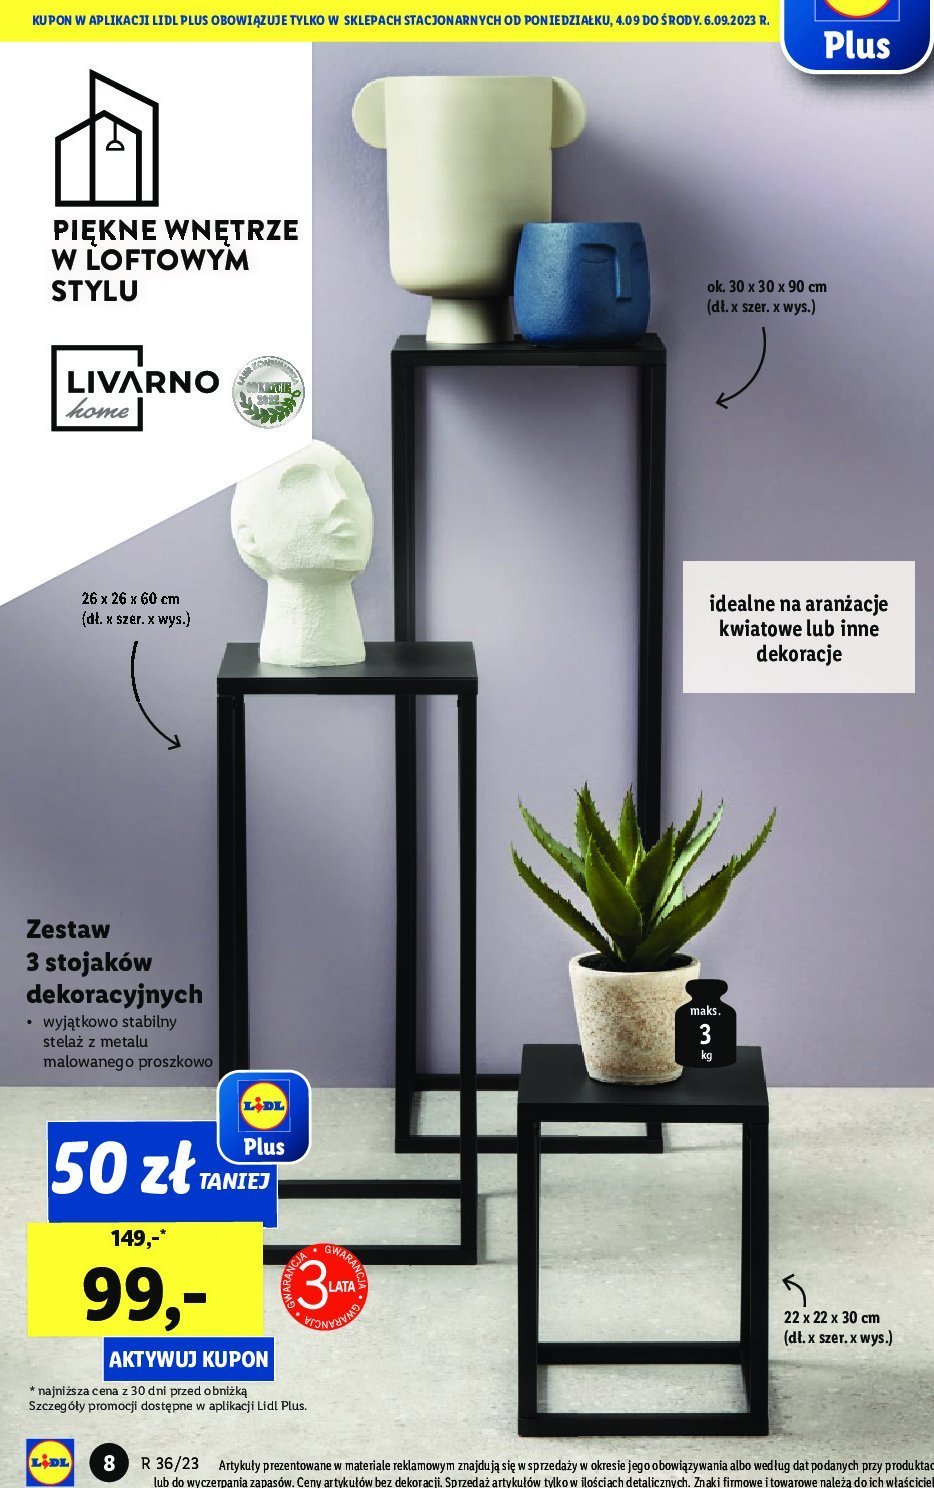 Zestaw stojaków dekoracyjnych Brak - | - - Blix.pl sklep cena promocje - HOME LIVARNO opinie - ofert